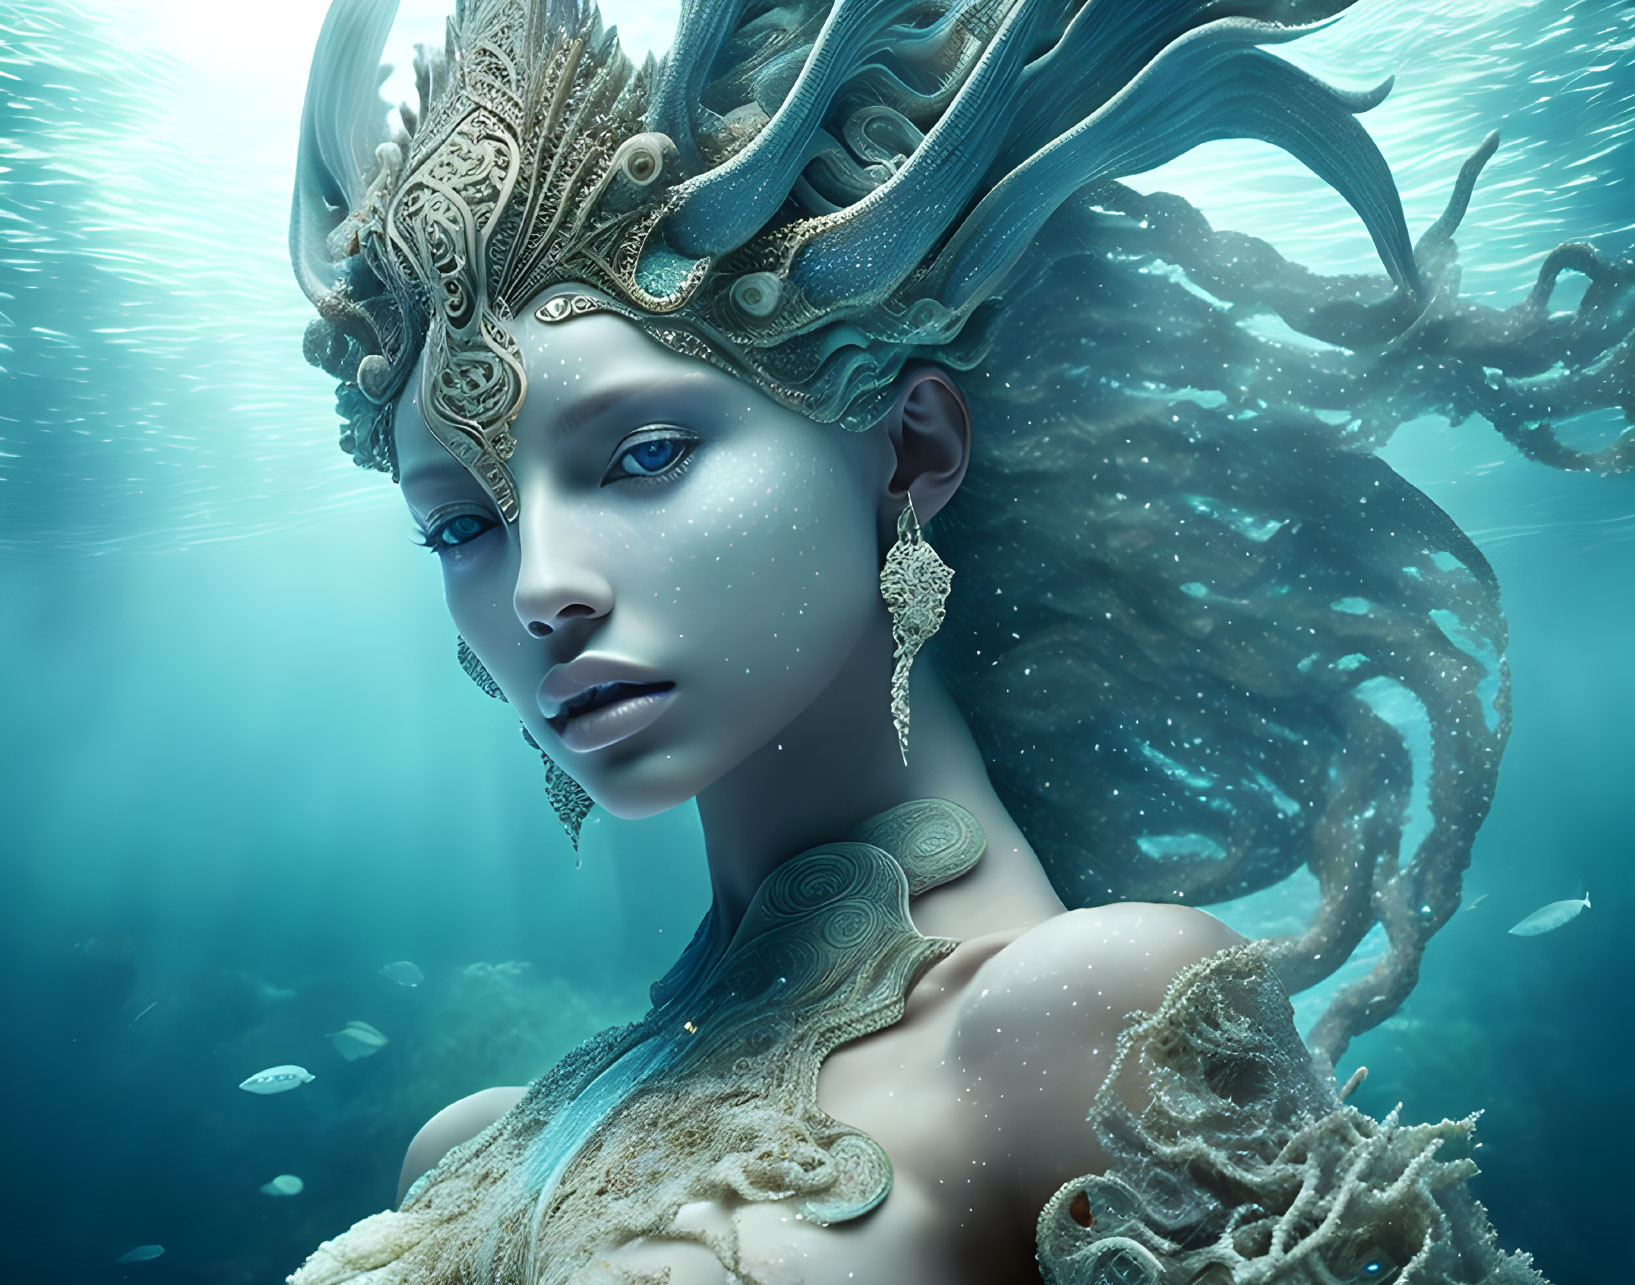 The ocean goddess 